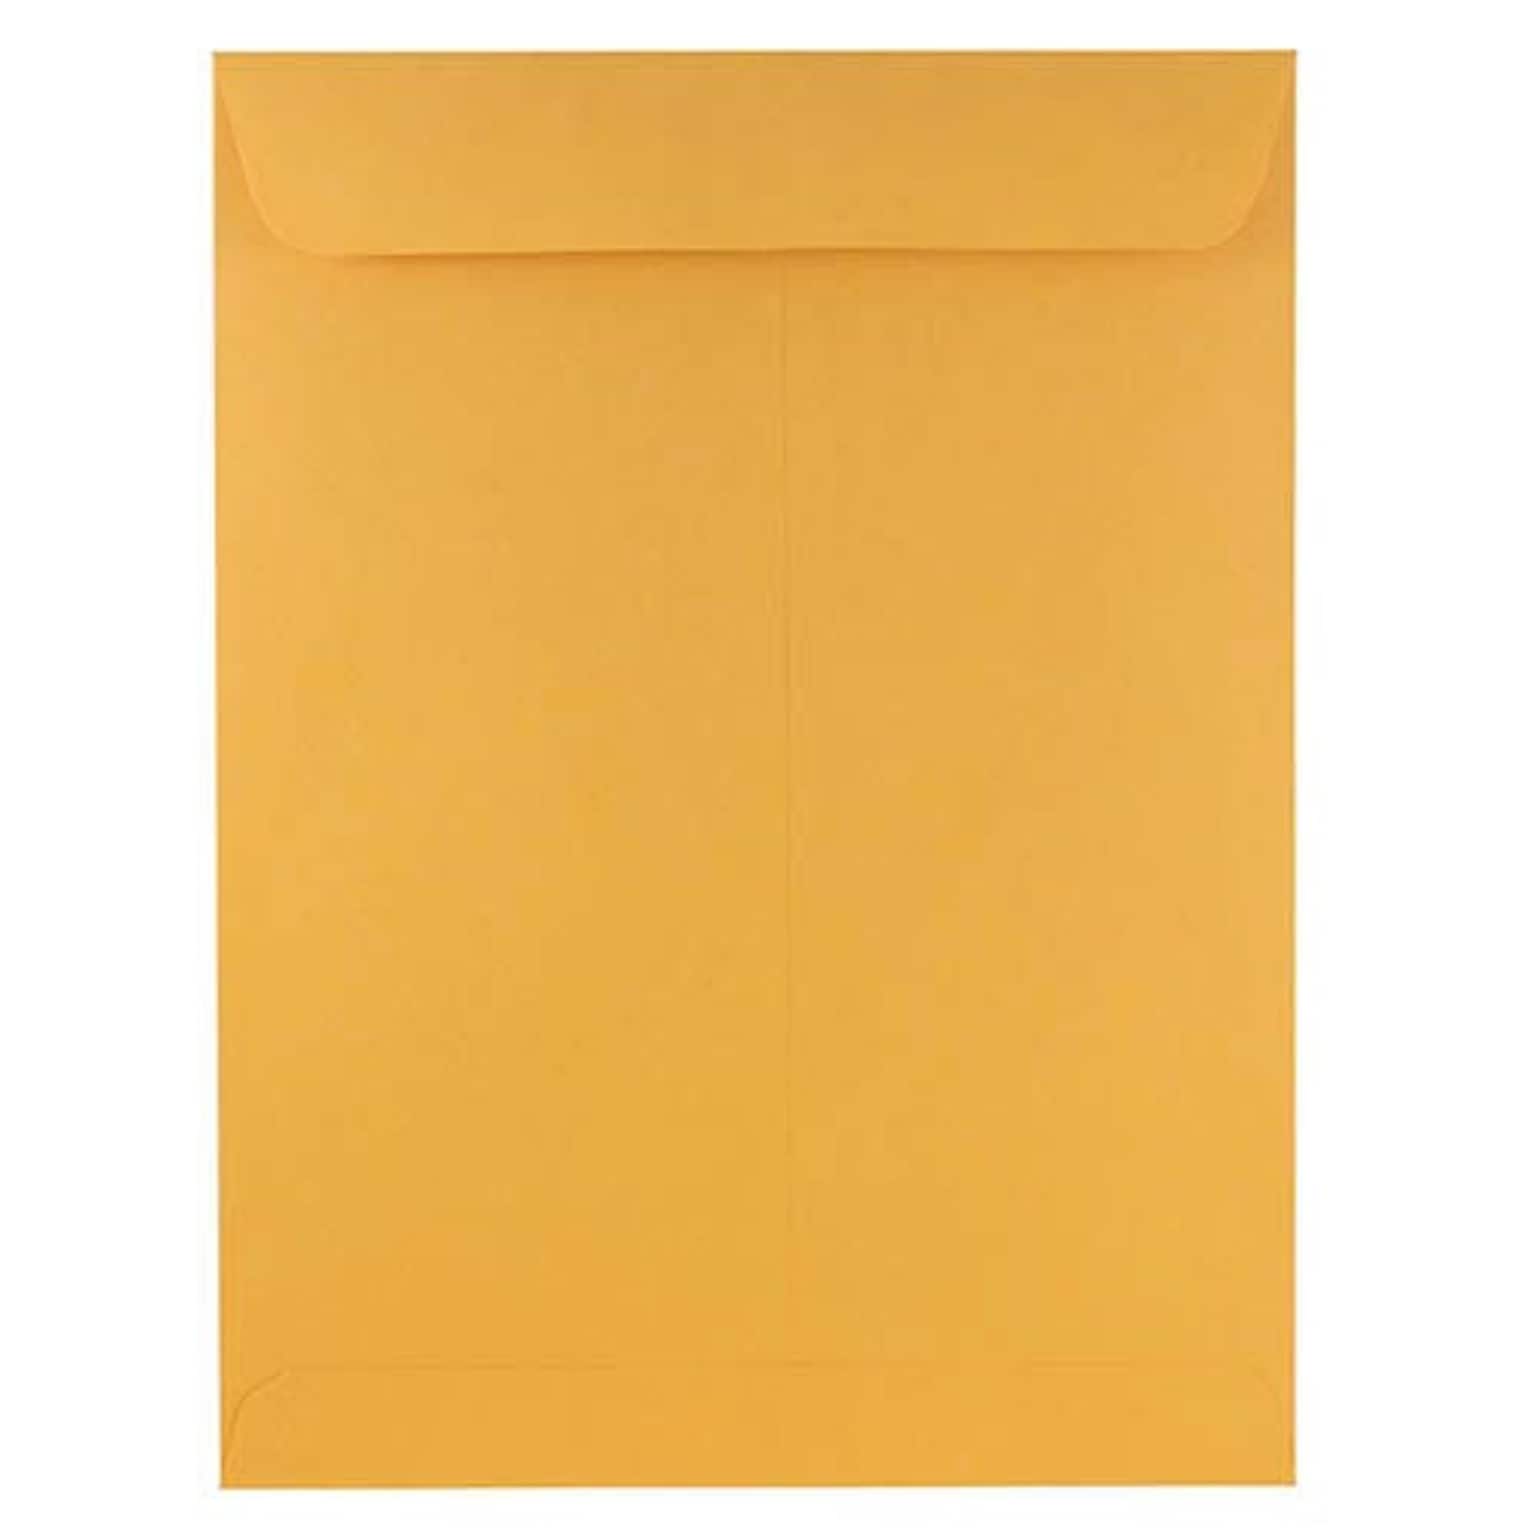 JAM Paper Open End Booklet Envelopes, 9 x 12, Brown Kraft, 250/Pack (8383-250)